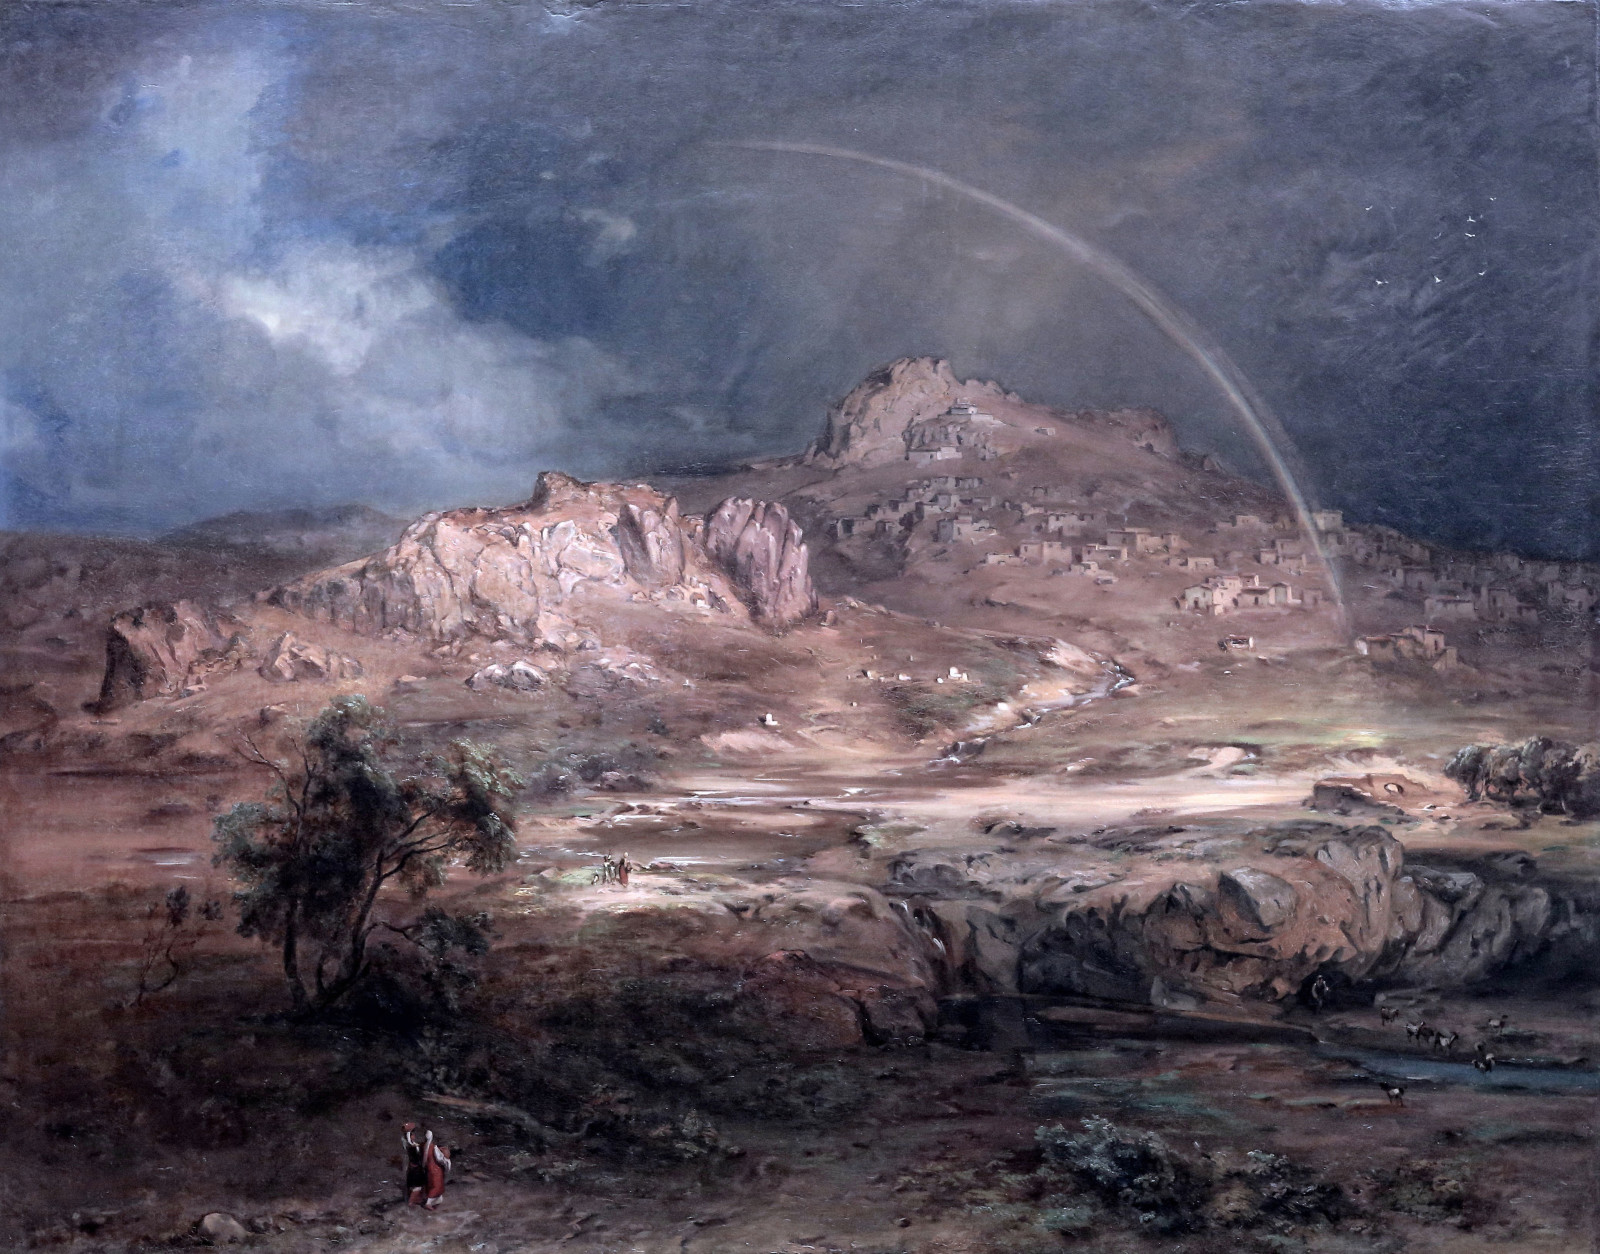 뮌헨, 독일 풍경 화가, 칼 안톤 조셉 로스 만, 1847